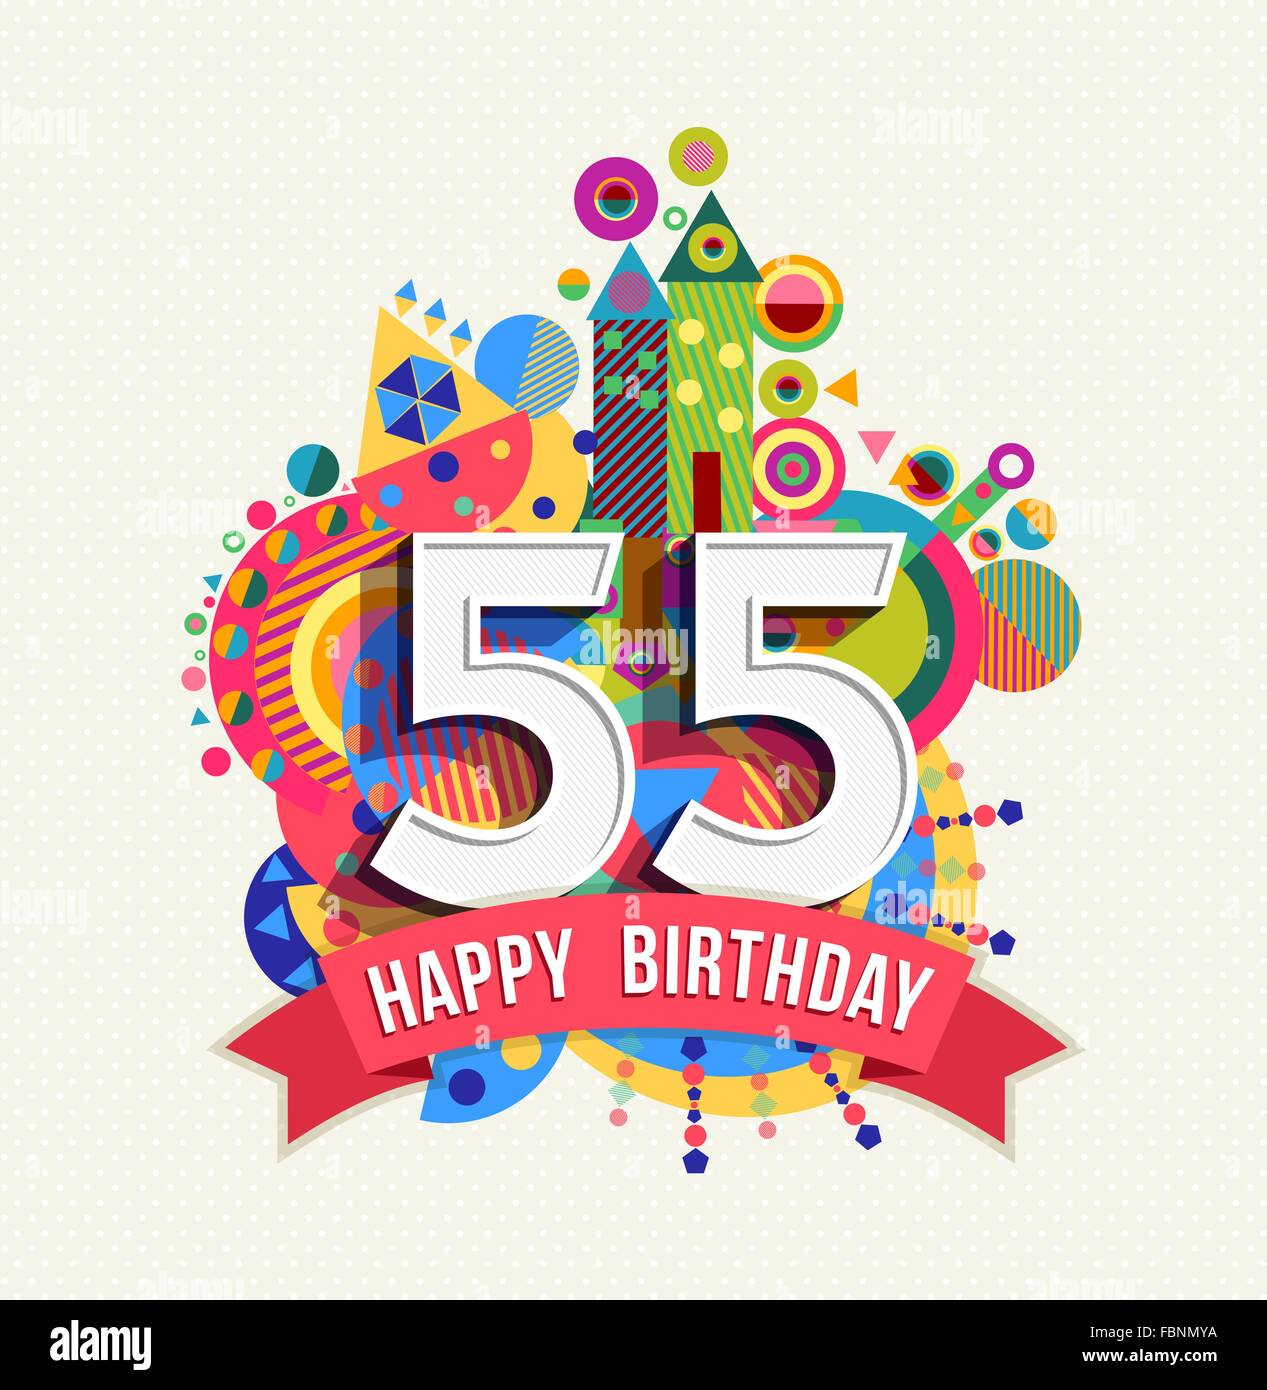 Joyeux anniversaire cinquante cinq 55 ans, carte de souhaits fête amusante avec étiquette de texte, nombre et géométrie colorée design. EPS10 Illustration de Vecteur